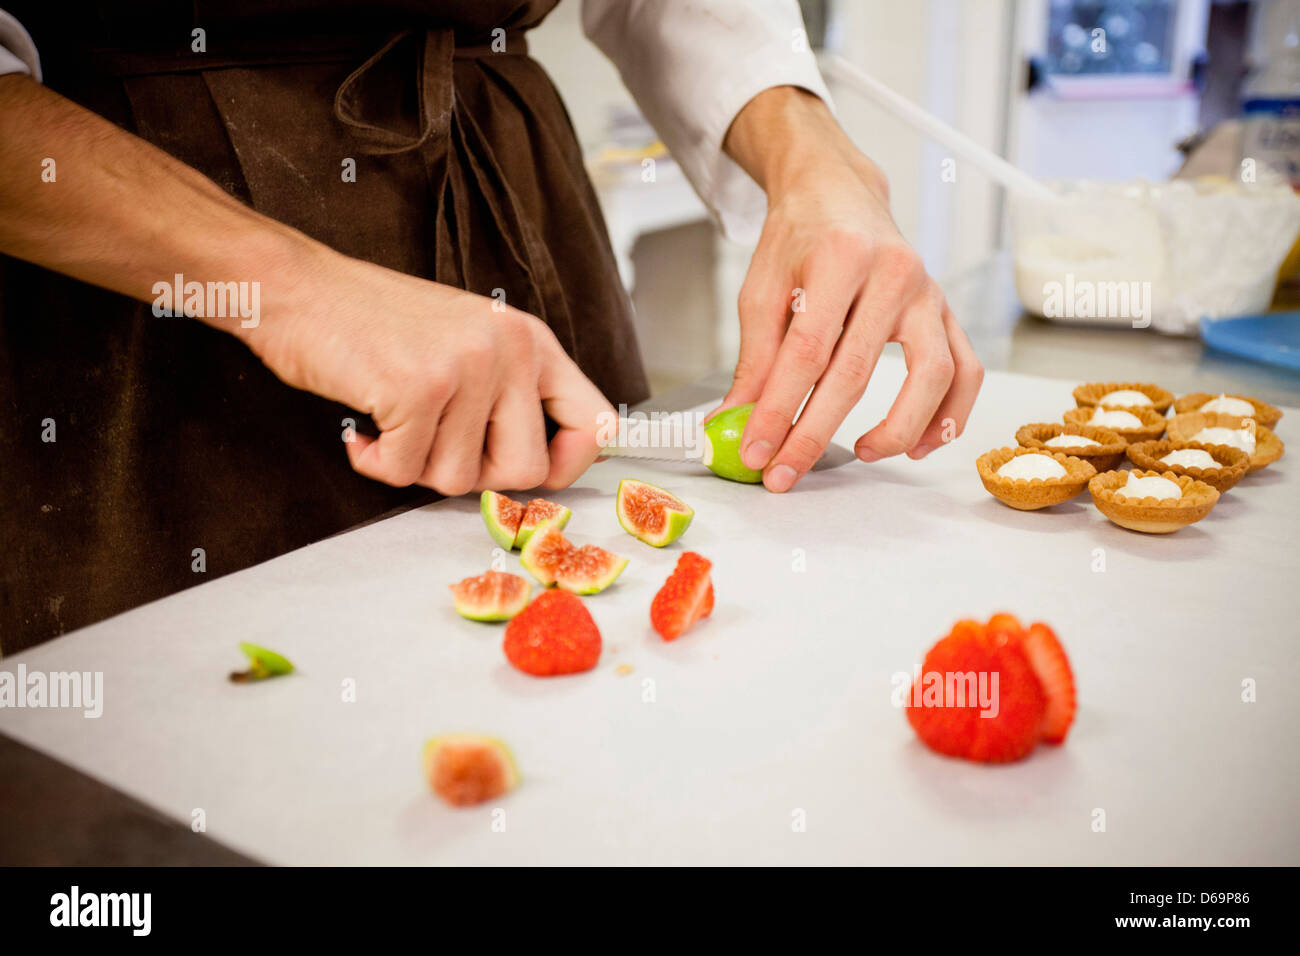 Baker slicing fruit en cuisine Banque D'Images